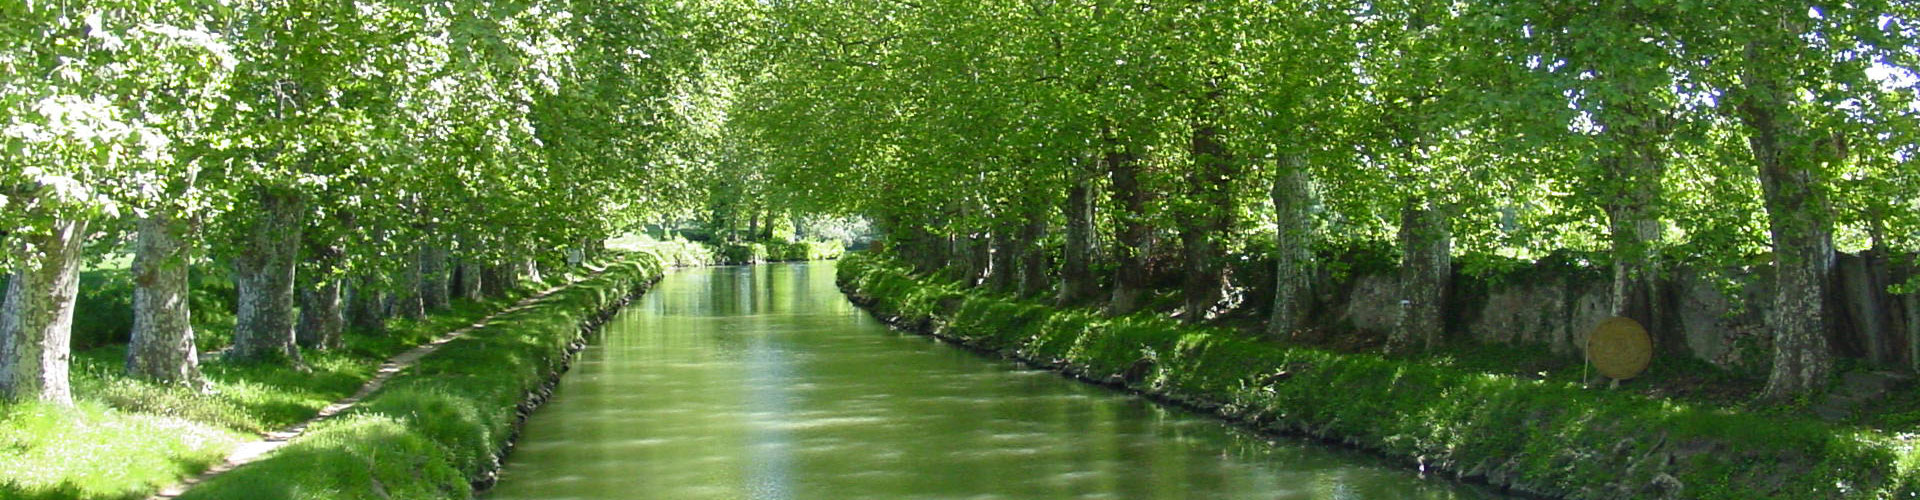 Agde Croisière Location Canal du Midi